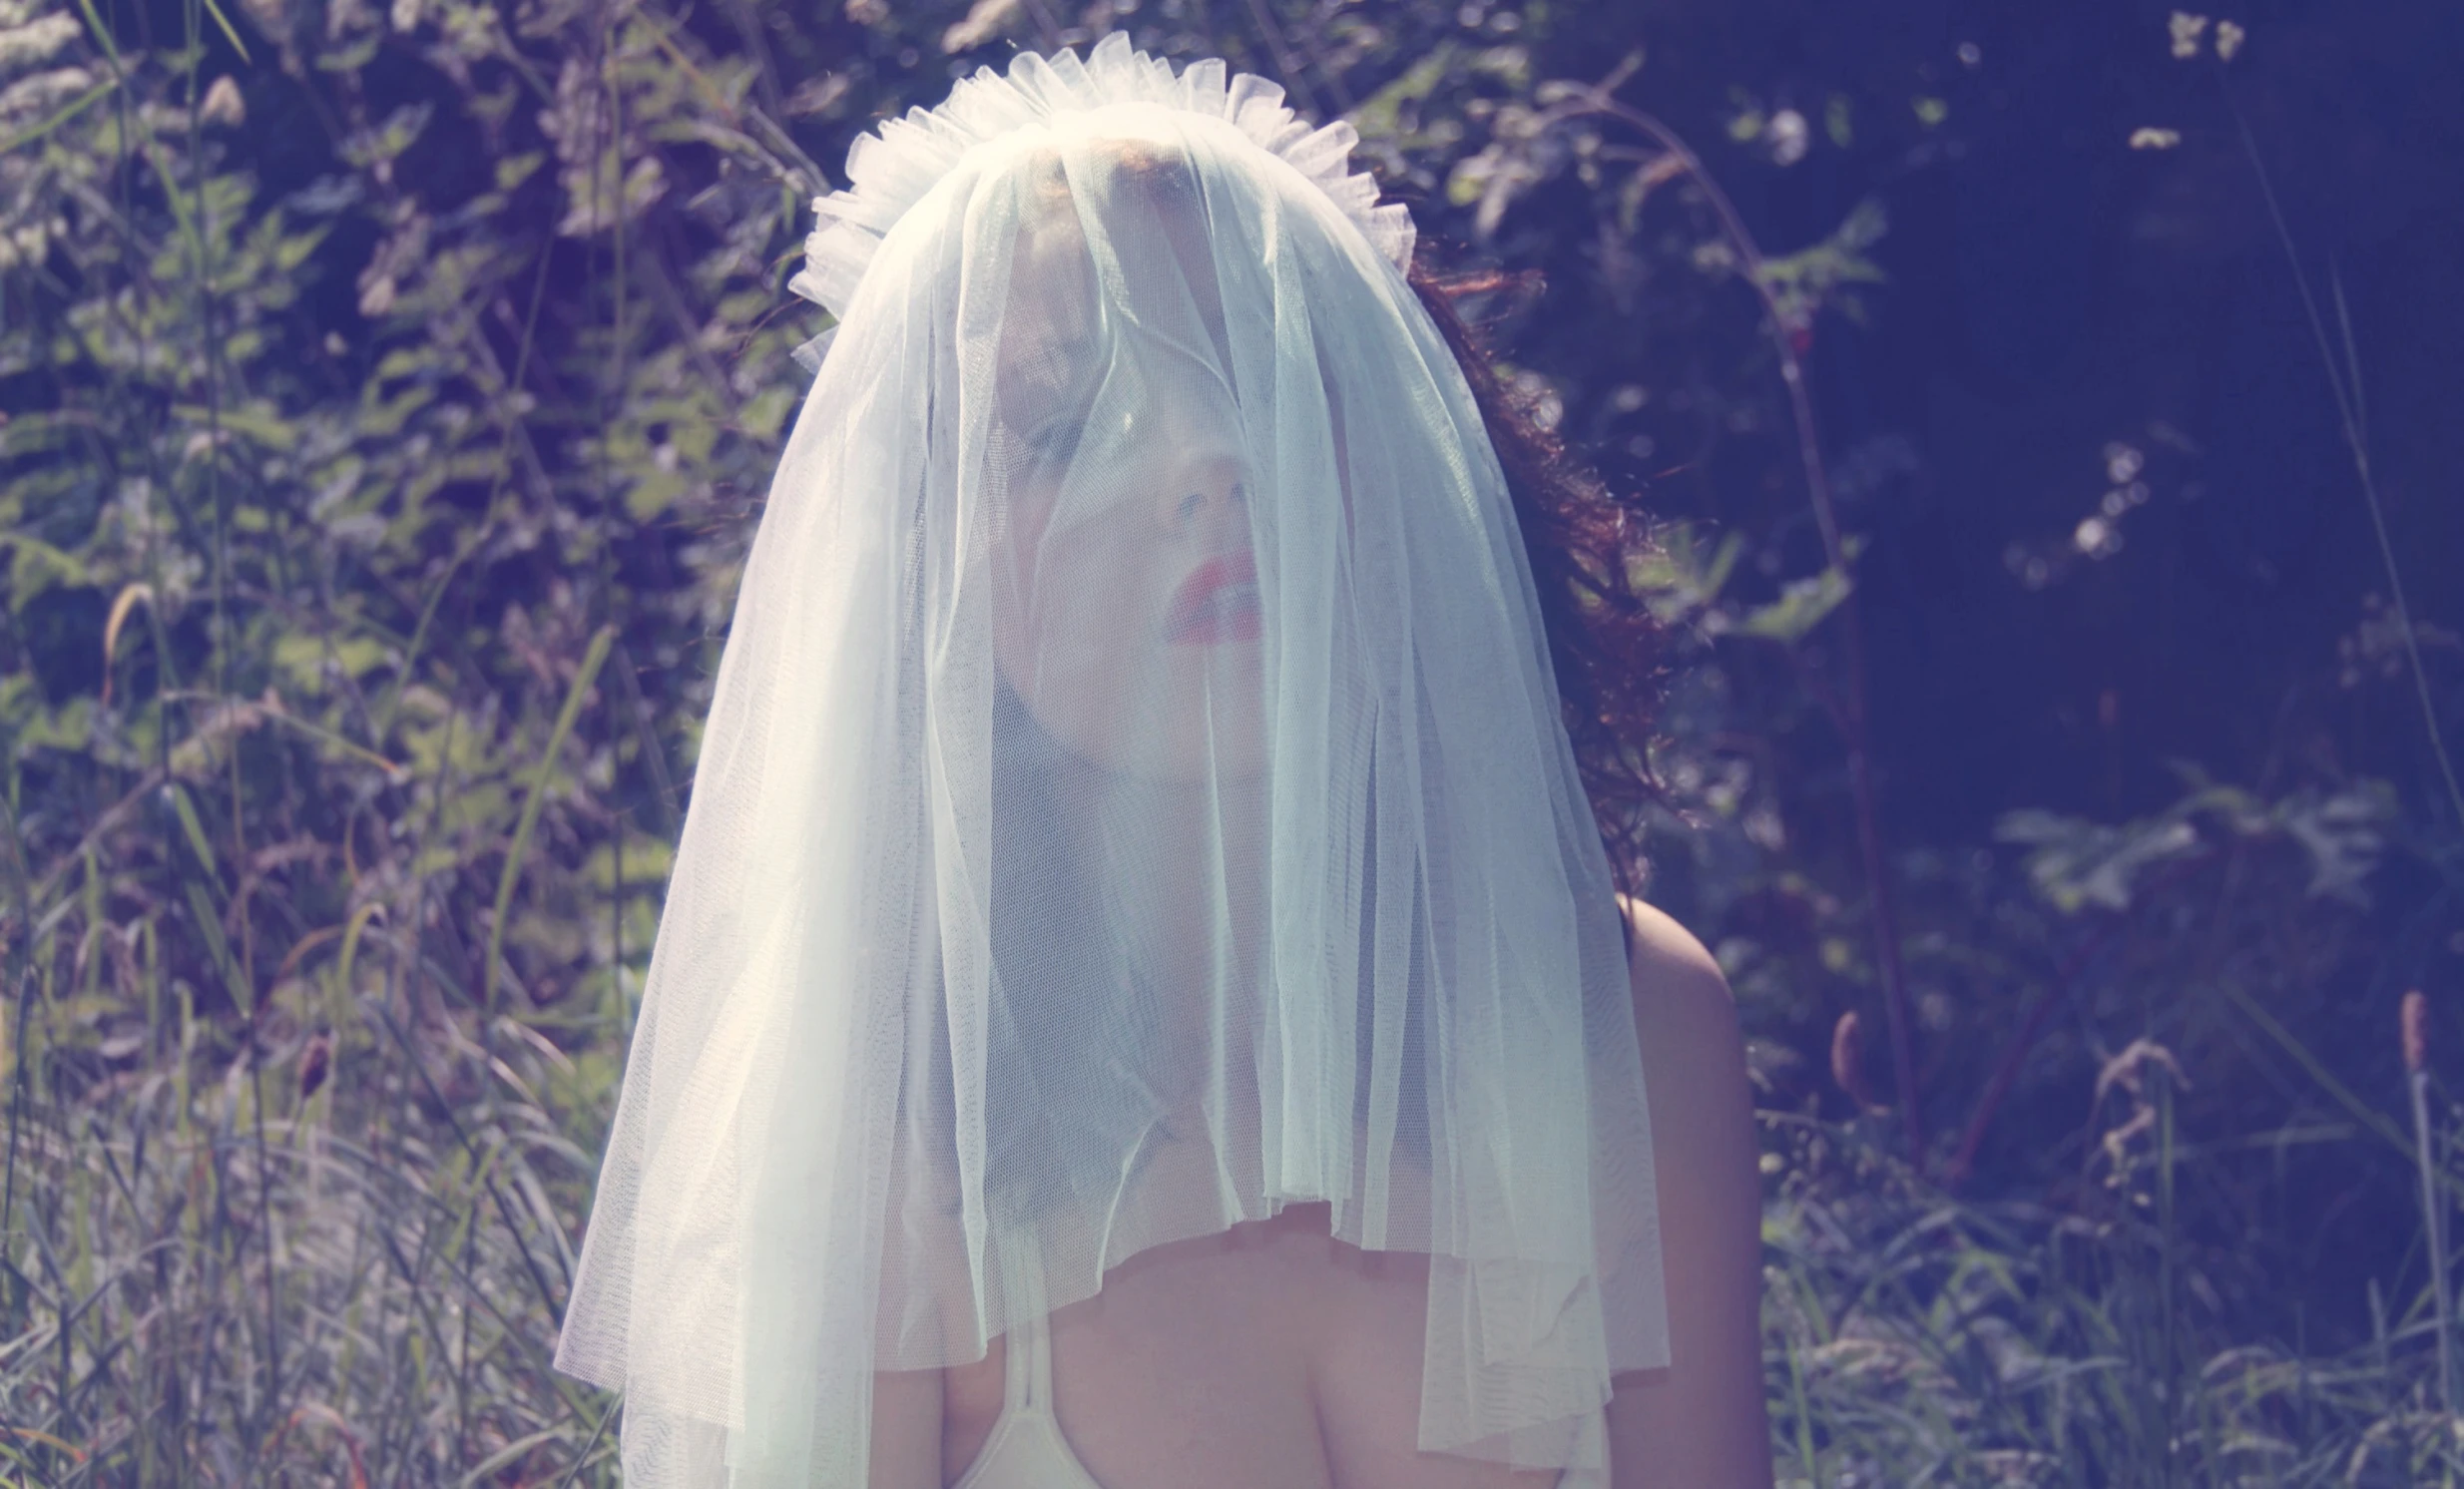 a bride in white veil walking through a field